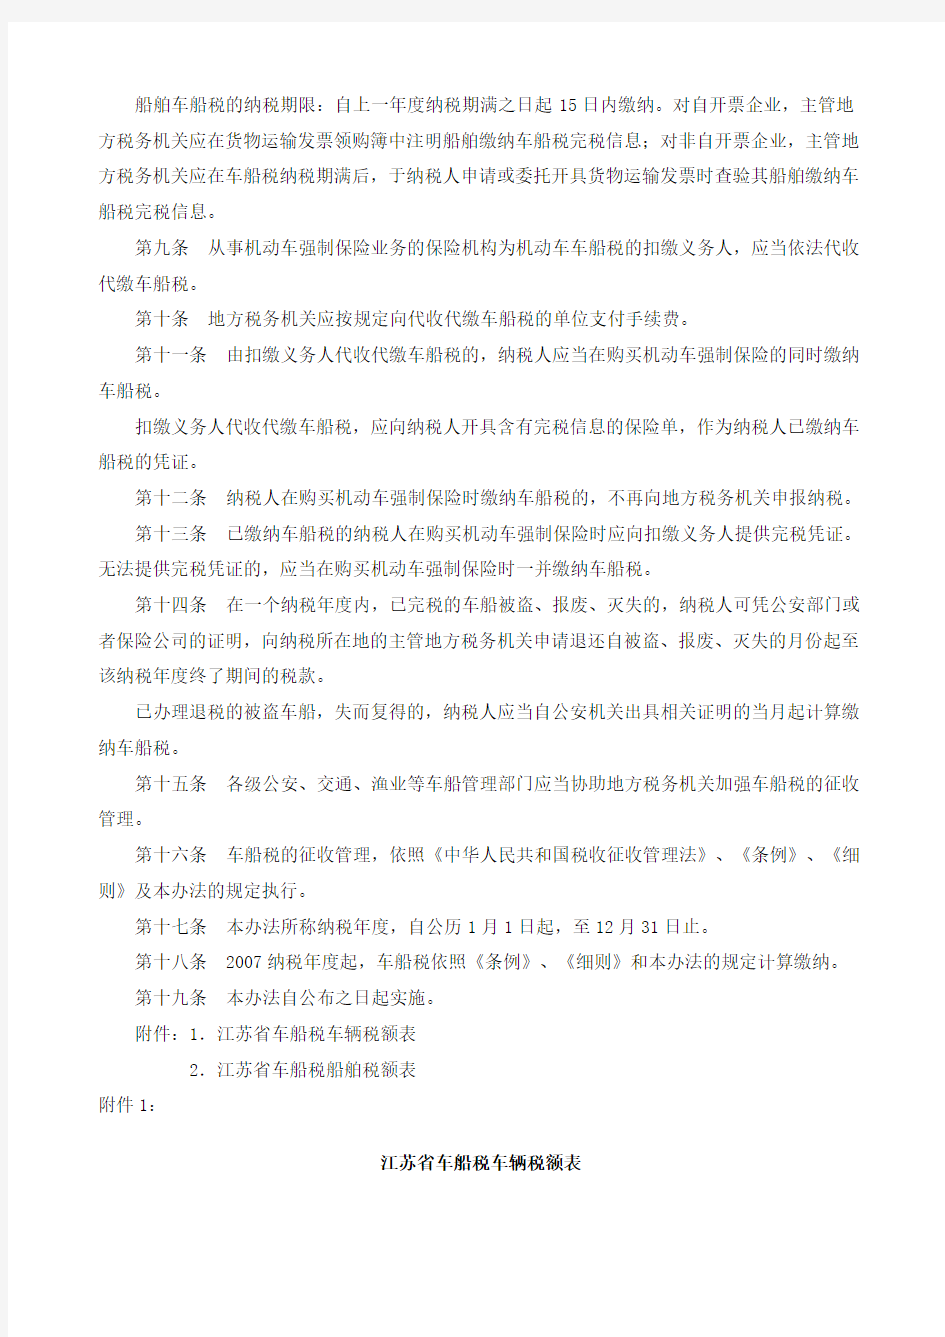 江苏省《中华人民共和国车船税暂行条例》实施办法